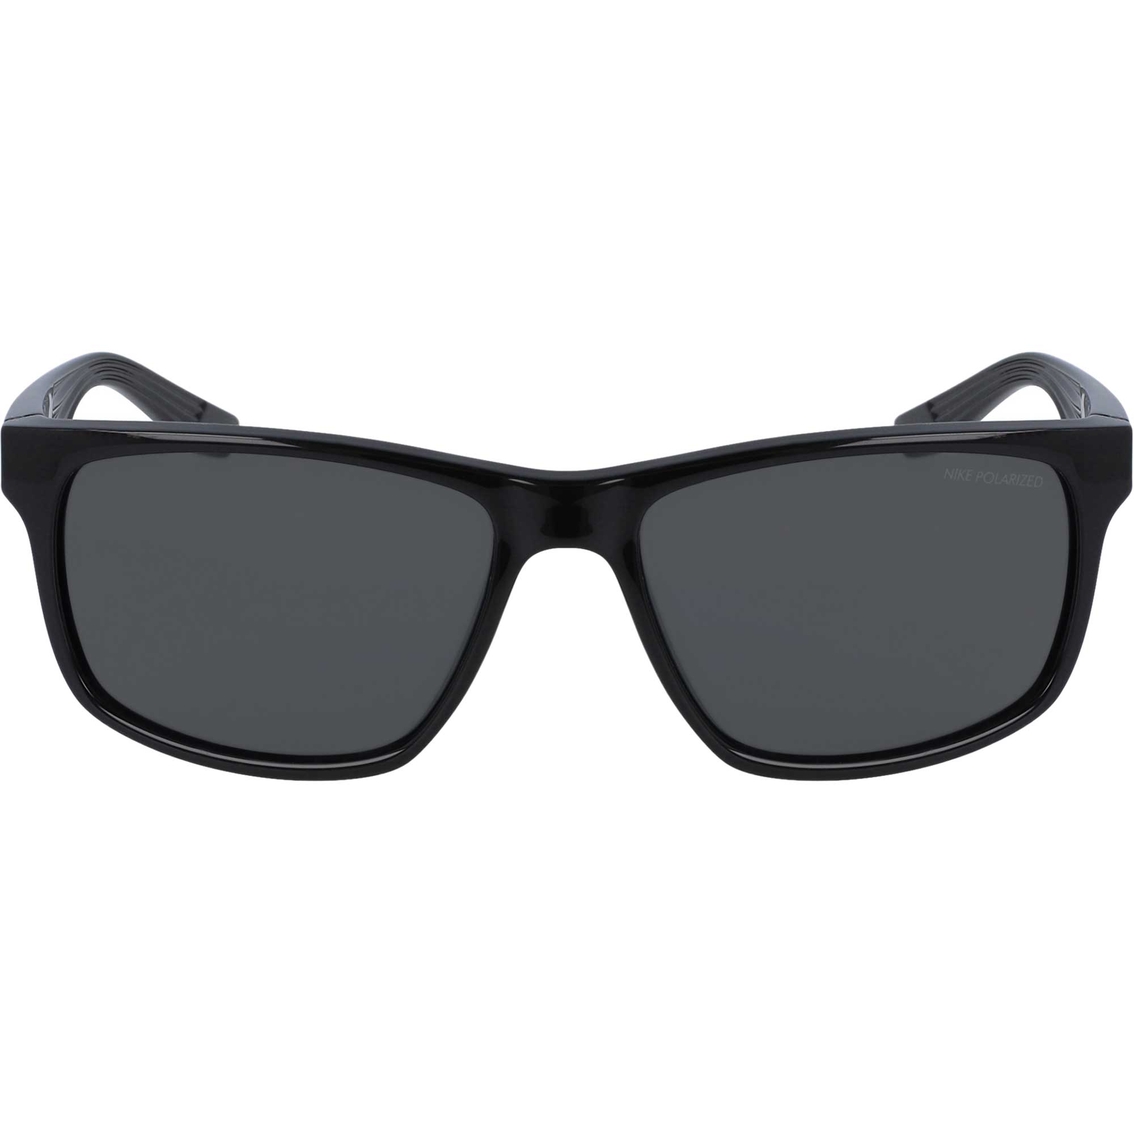 Nike Cruiser Polarized Sunglasses Cw4722010 | Sunglasses | Clothing ...